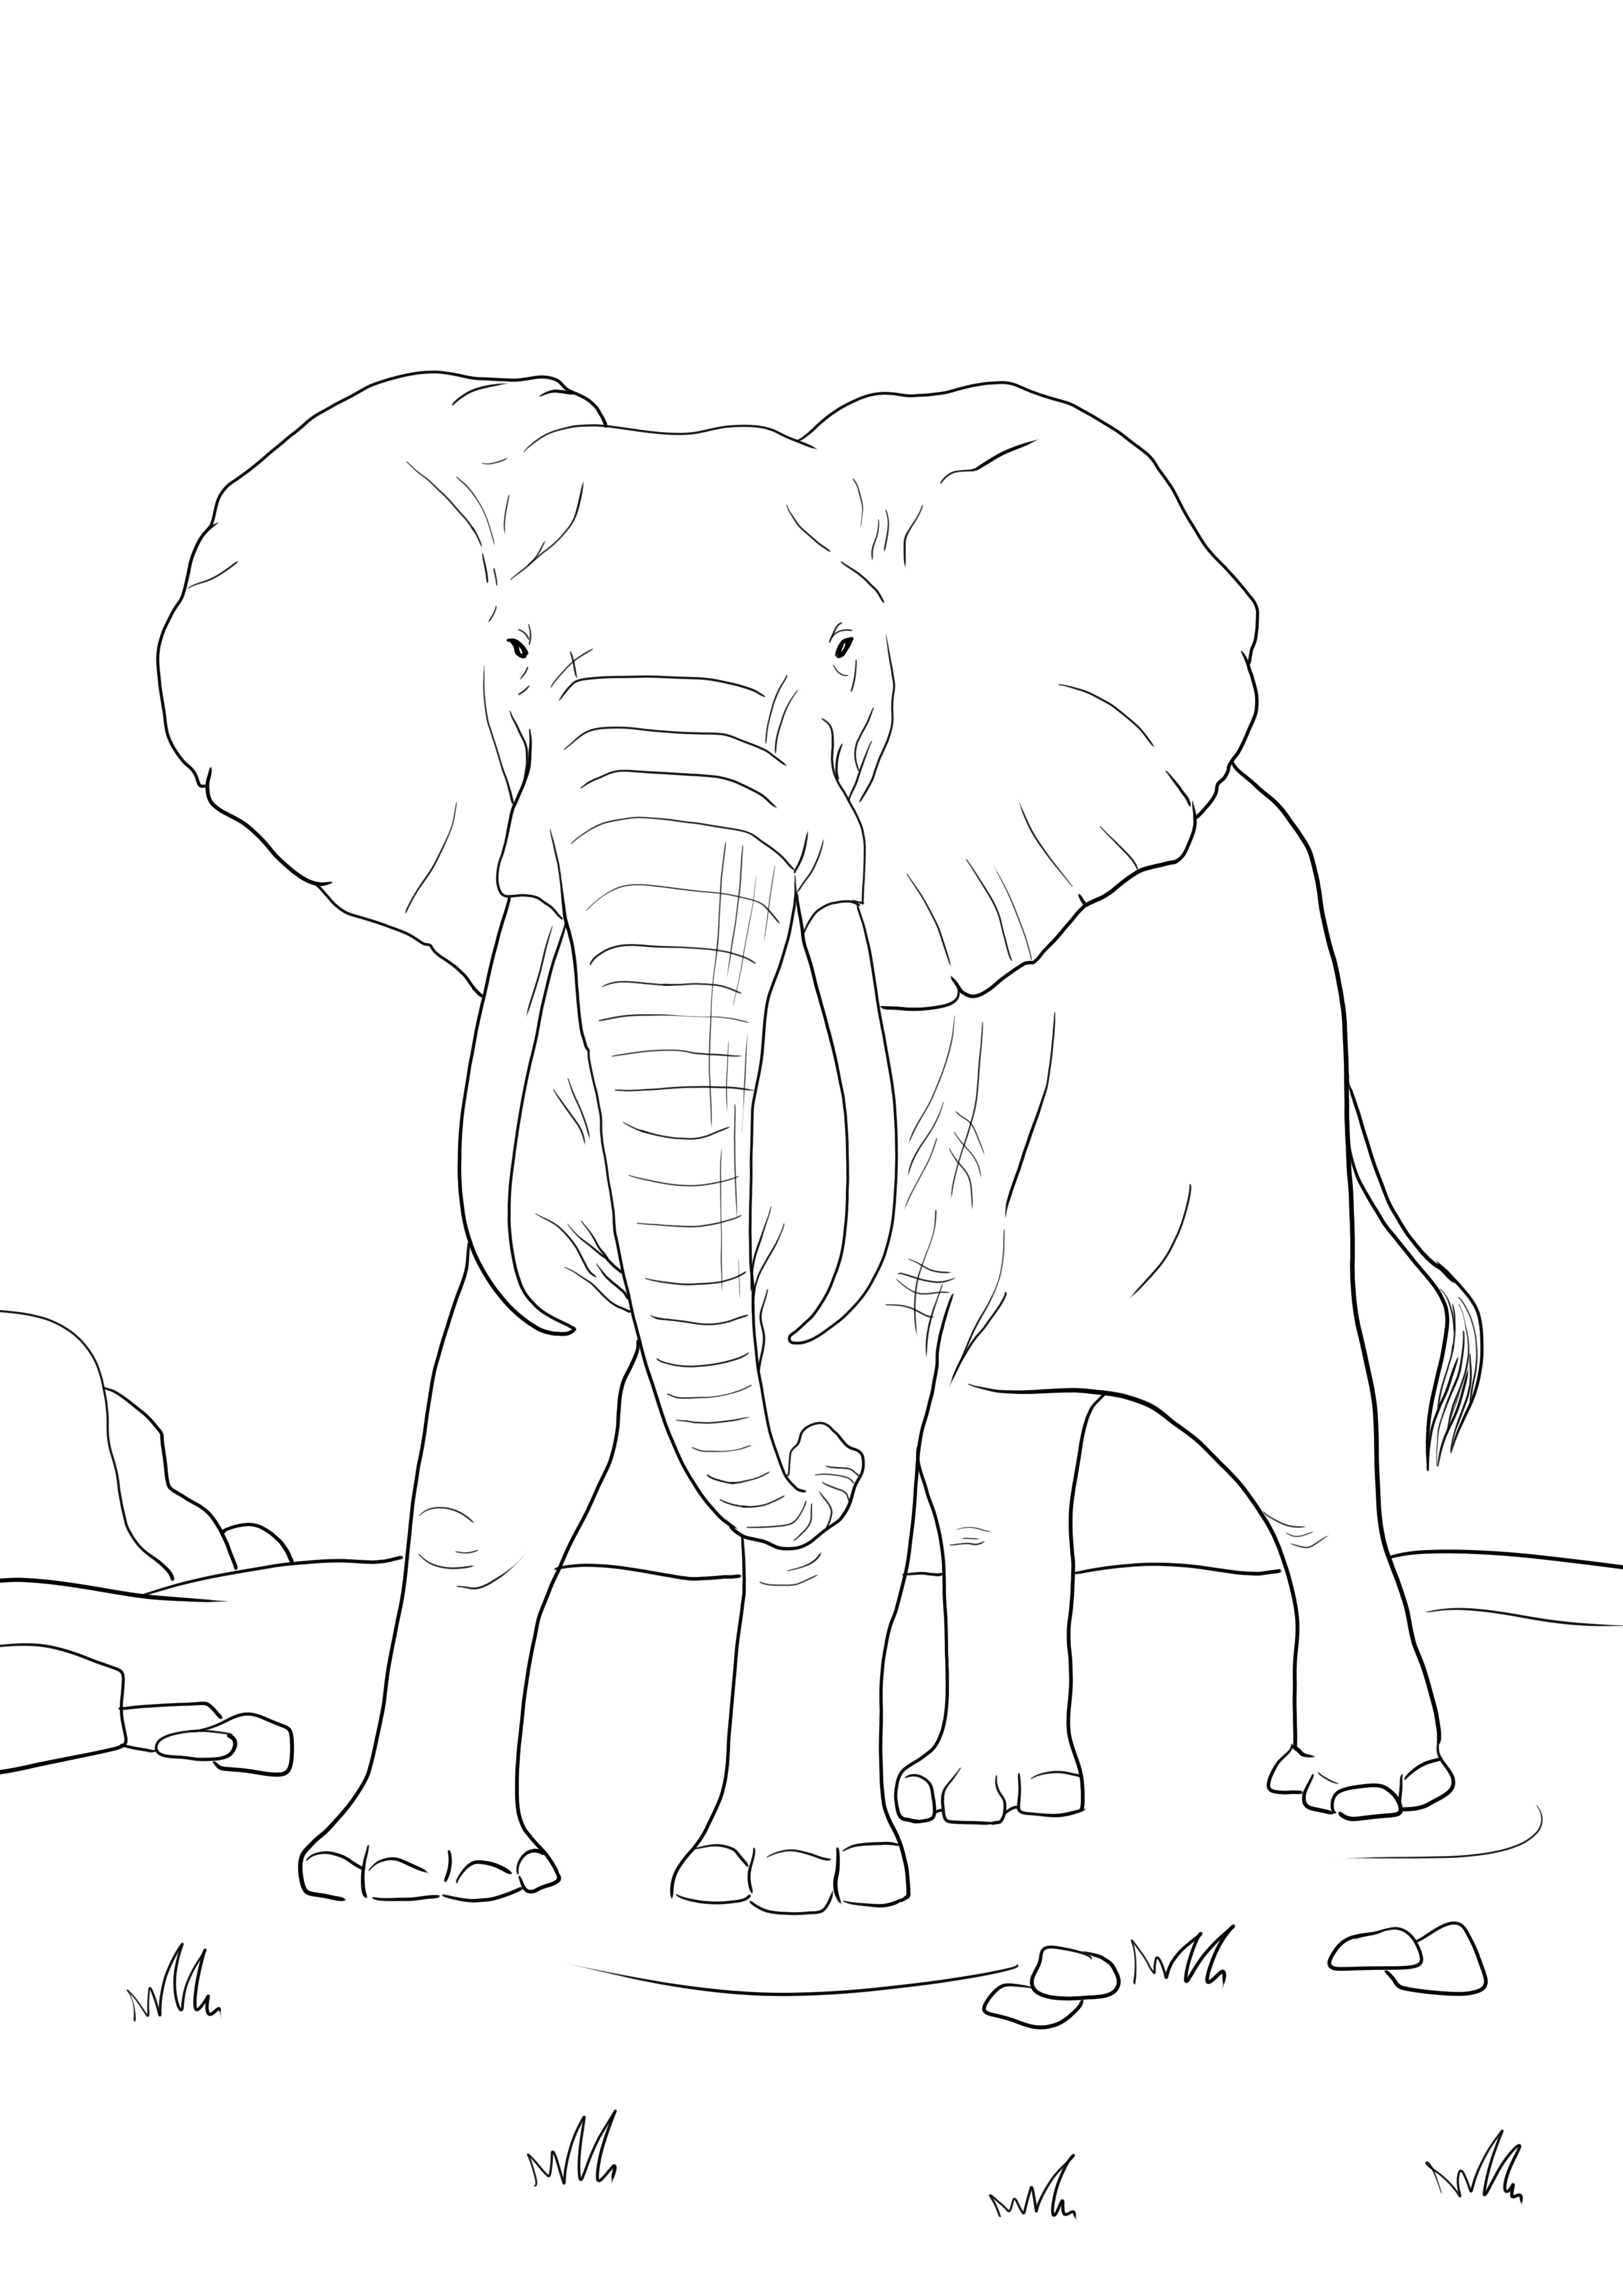 Halaman mewarnai sederhana gajah Afrika gratis untuk diunduh atau dicetak langsung